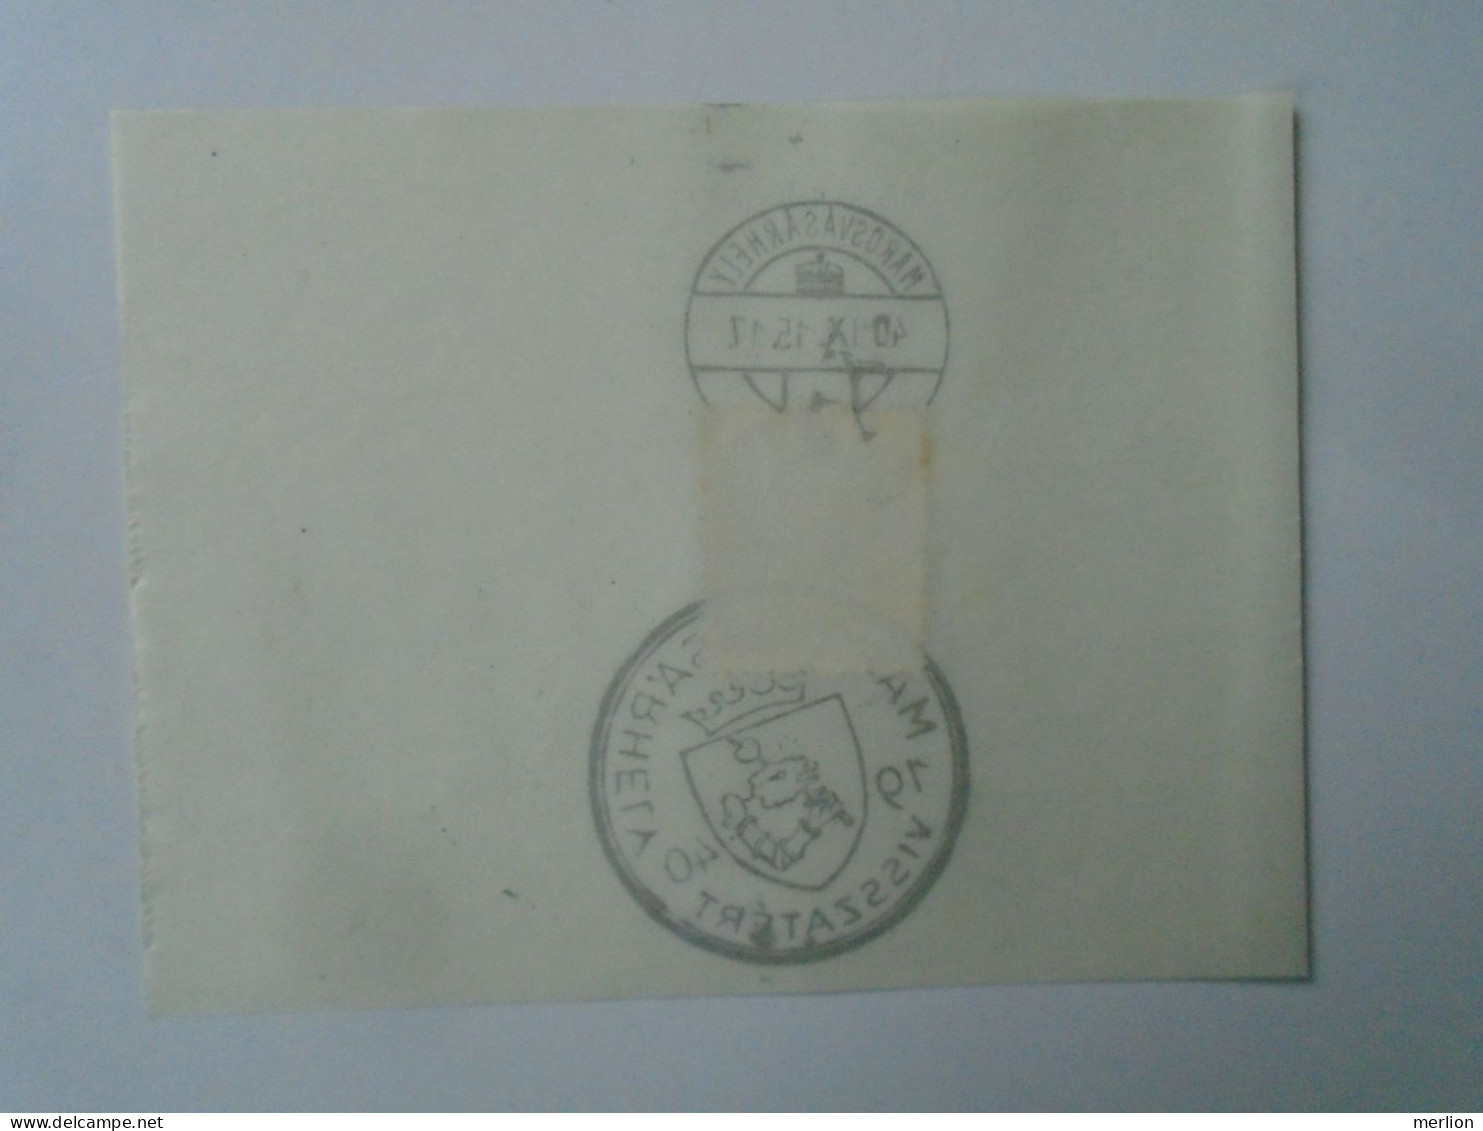 ZA451.60 Hungary -Marosvásárhely - Visszatért -Commemorative Postmark 1940 - Postmark Collection